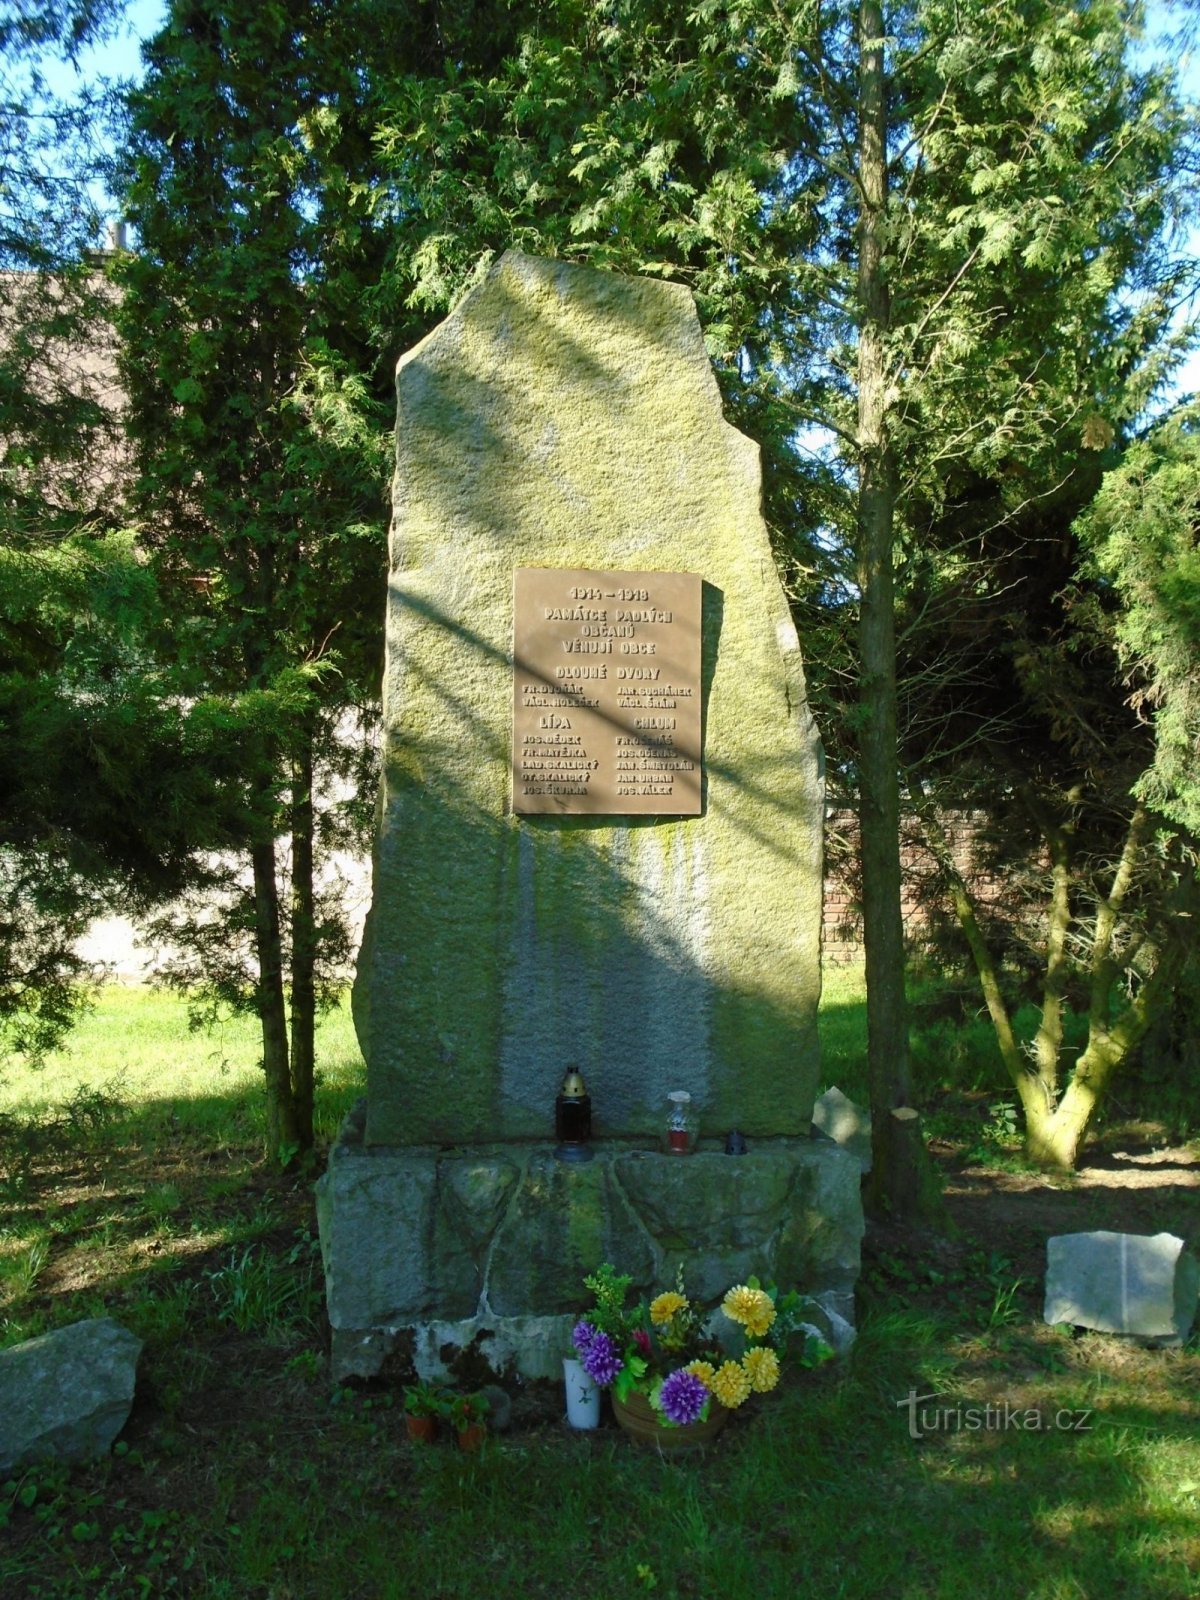 第一次世界大战阵亡将士纪念碑（利帕，1 年 20.5.2018 月 XNUMX 日）